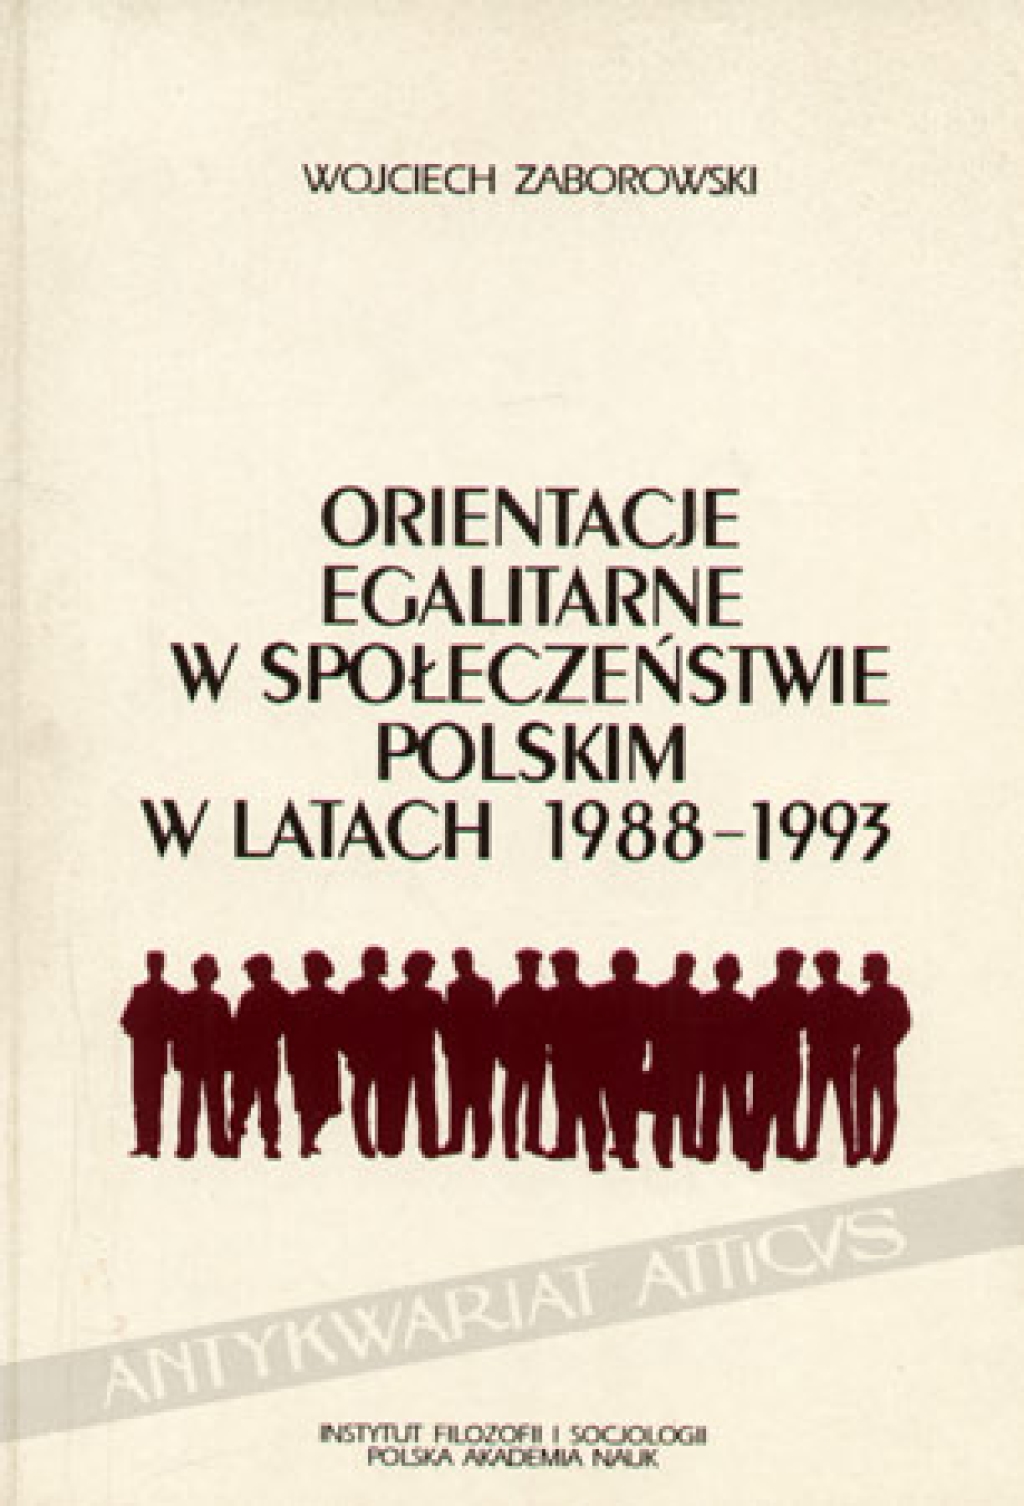 Orientacje egalitarne w społeczeństwie polskim w latach 1988-1993